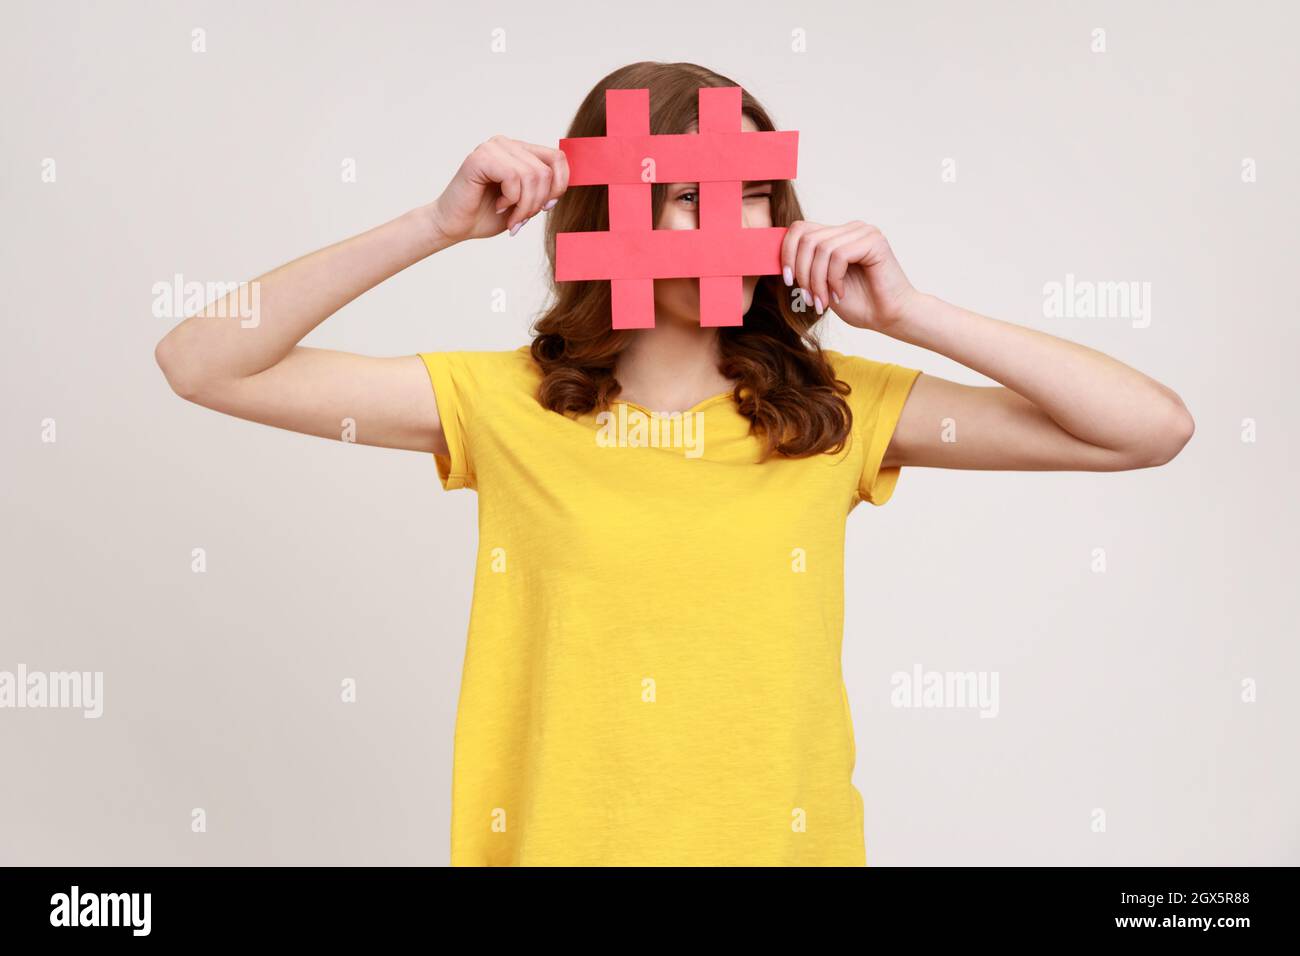 Curieuse femme de jeune âge à cheveux bruns en T-shirt jaune regardant à travers le signe rouge hashtag, à la recherche de bons postes dans les médias sociaux, espionnage. Prise de vue en studio isolée sur fond gris. Banque D'Images